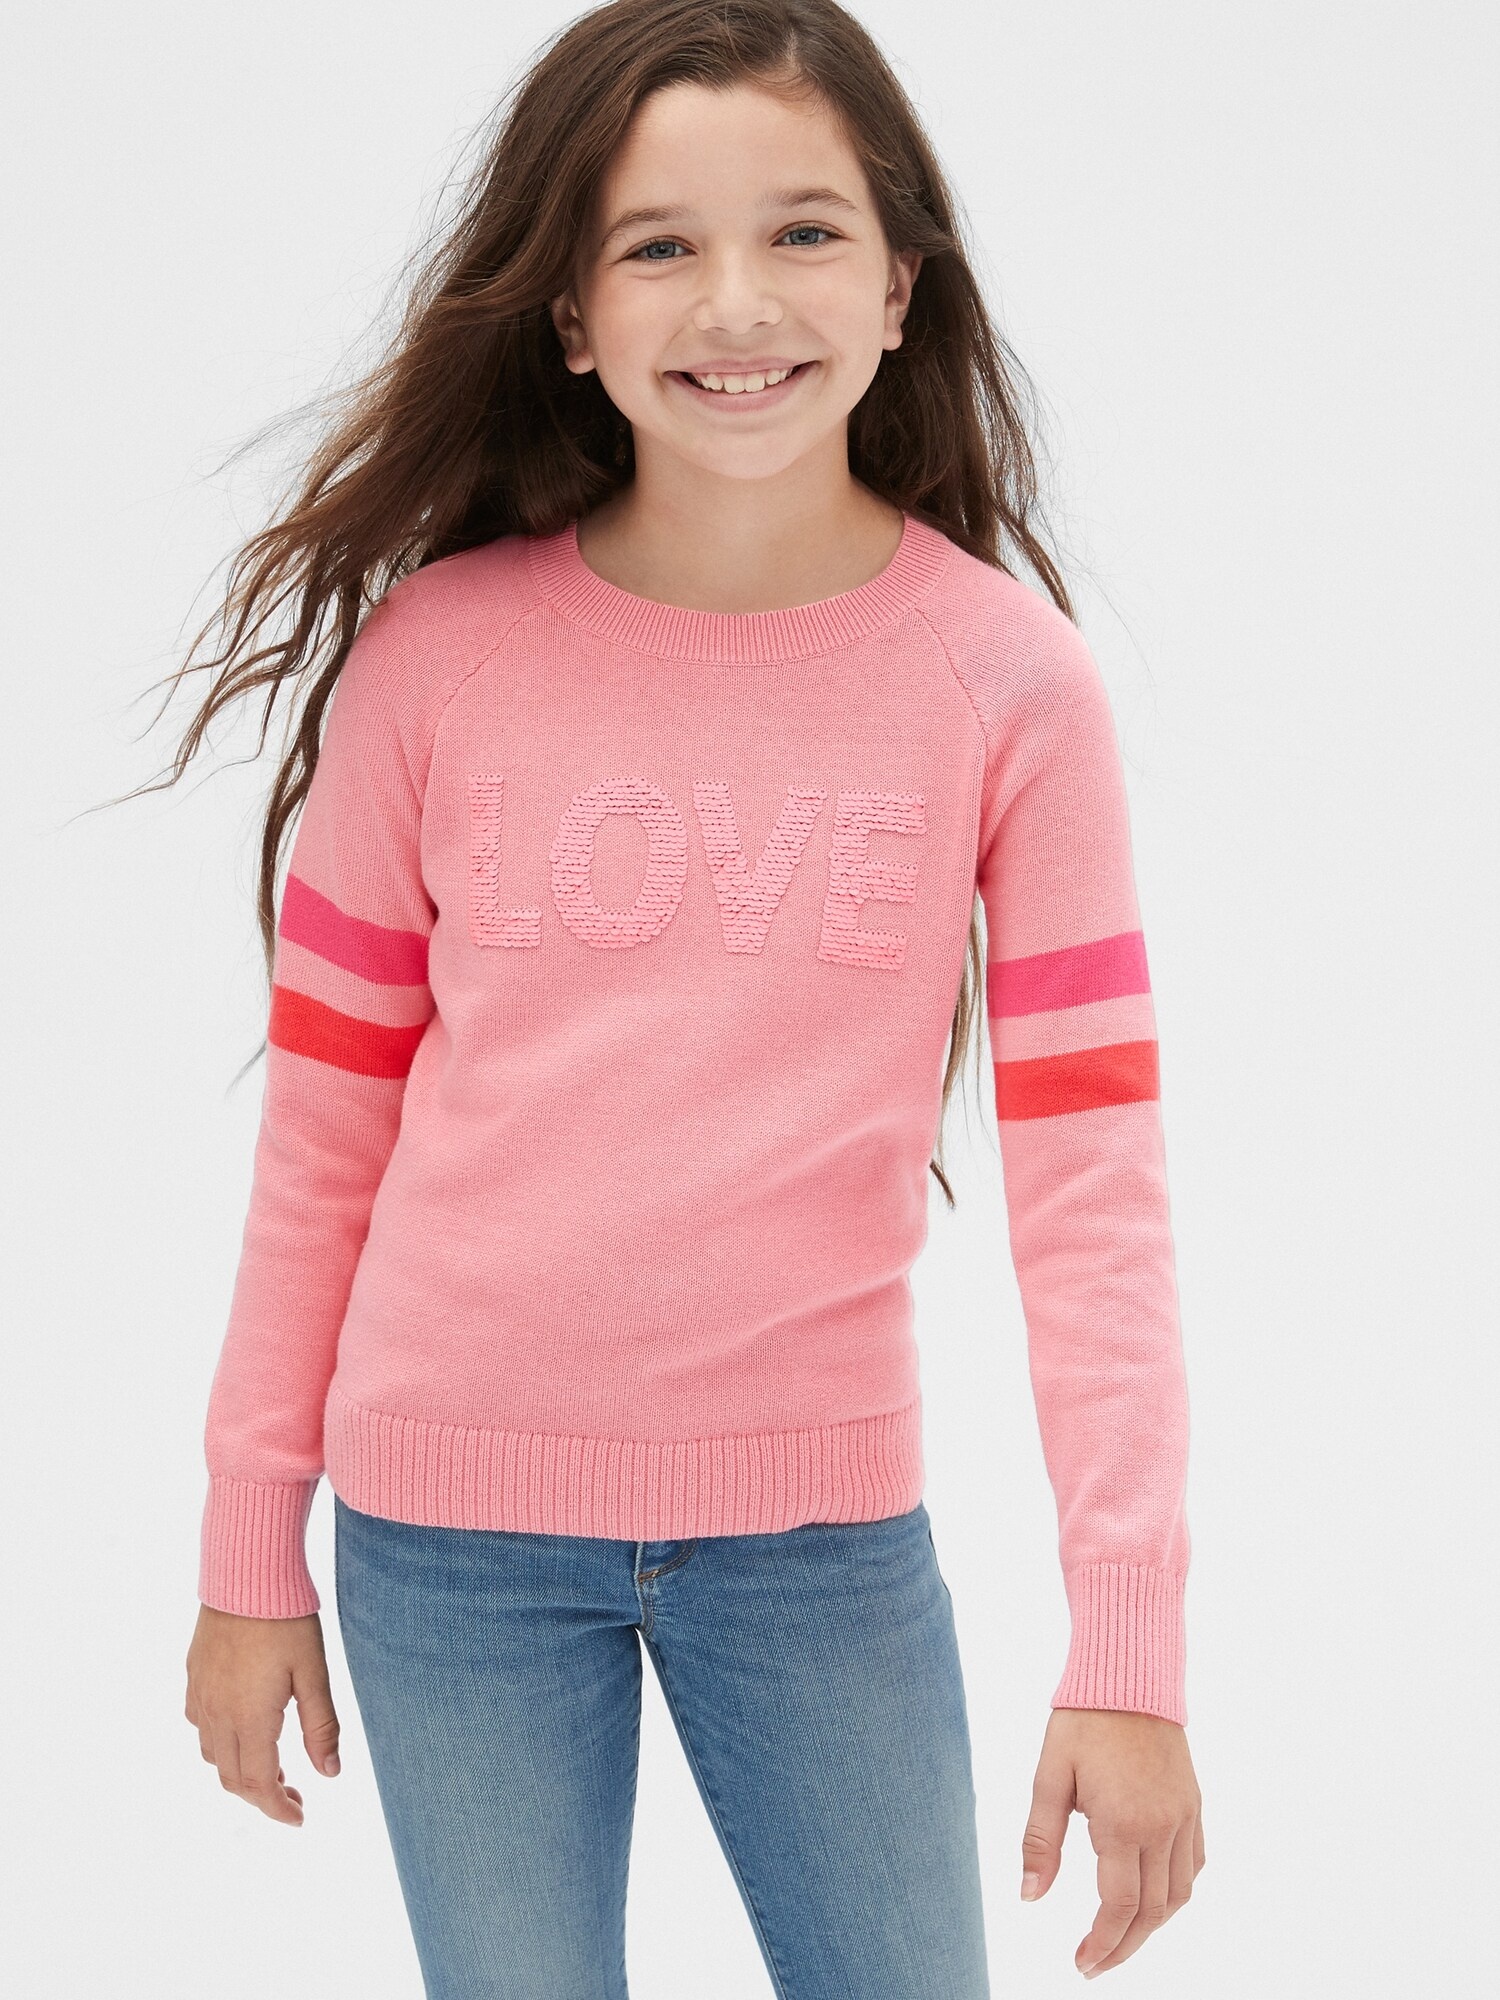 女童裝|創意可撥動亮片圓領針織衫-粉紅色